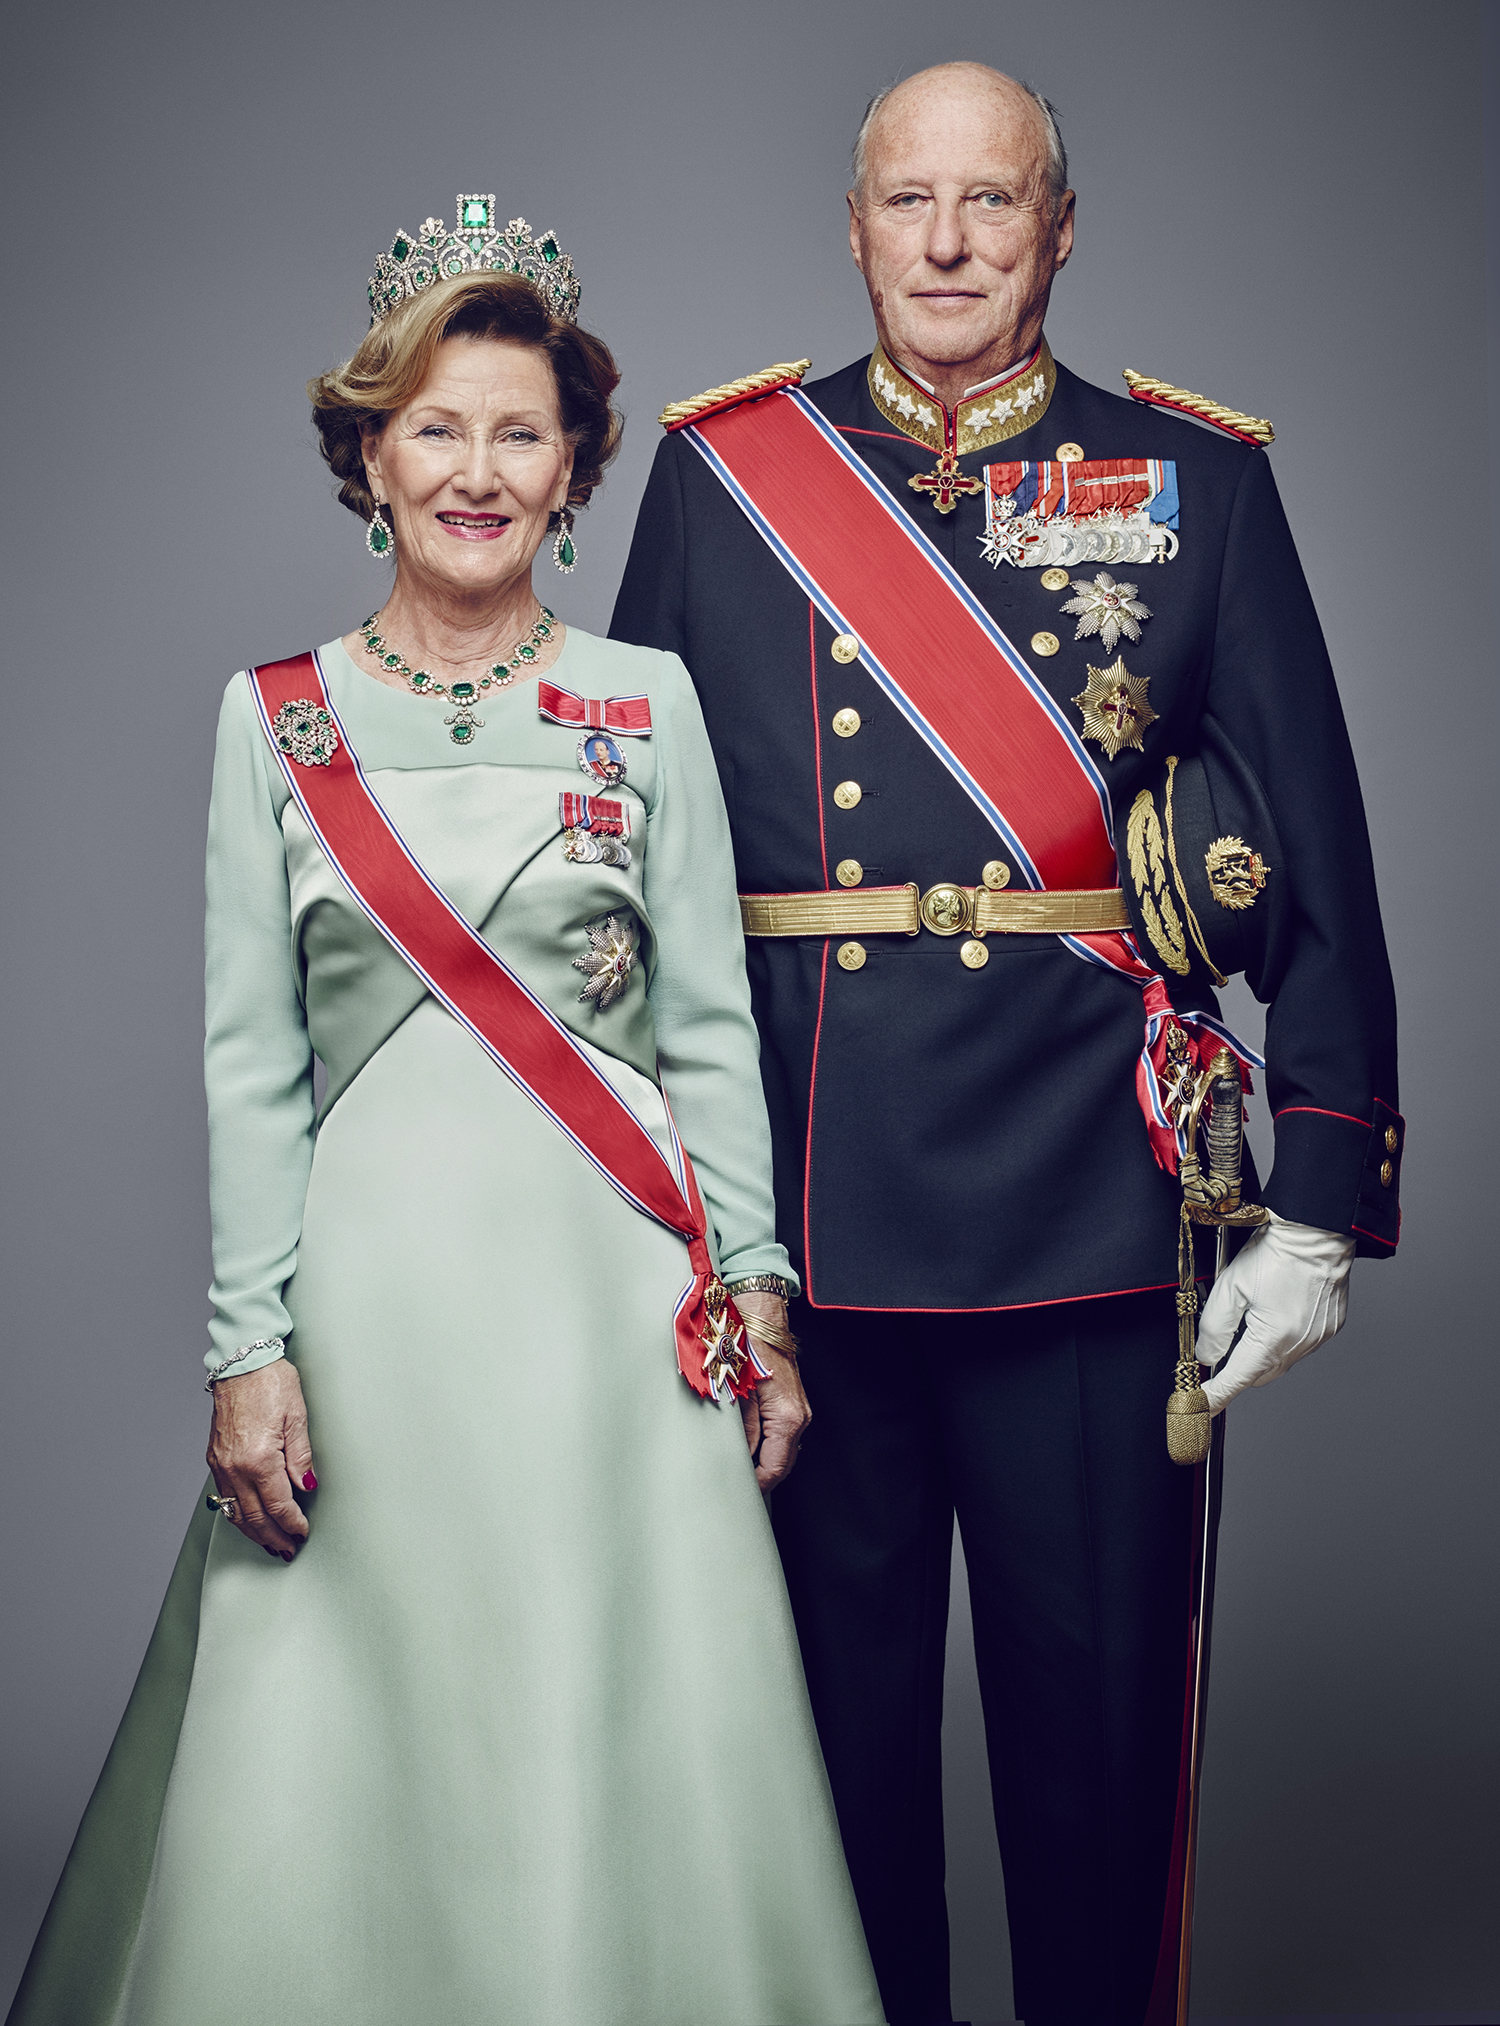 Norvégia királya házasság helyett a szerelmet választotta